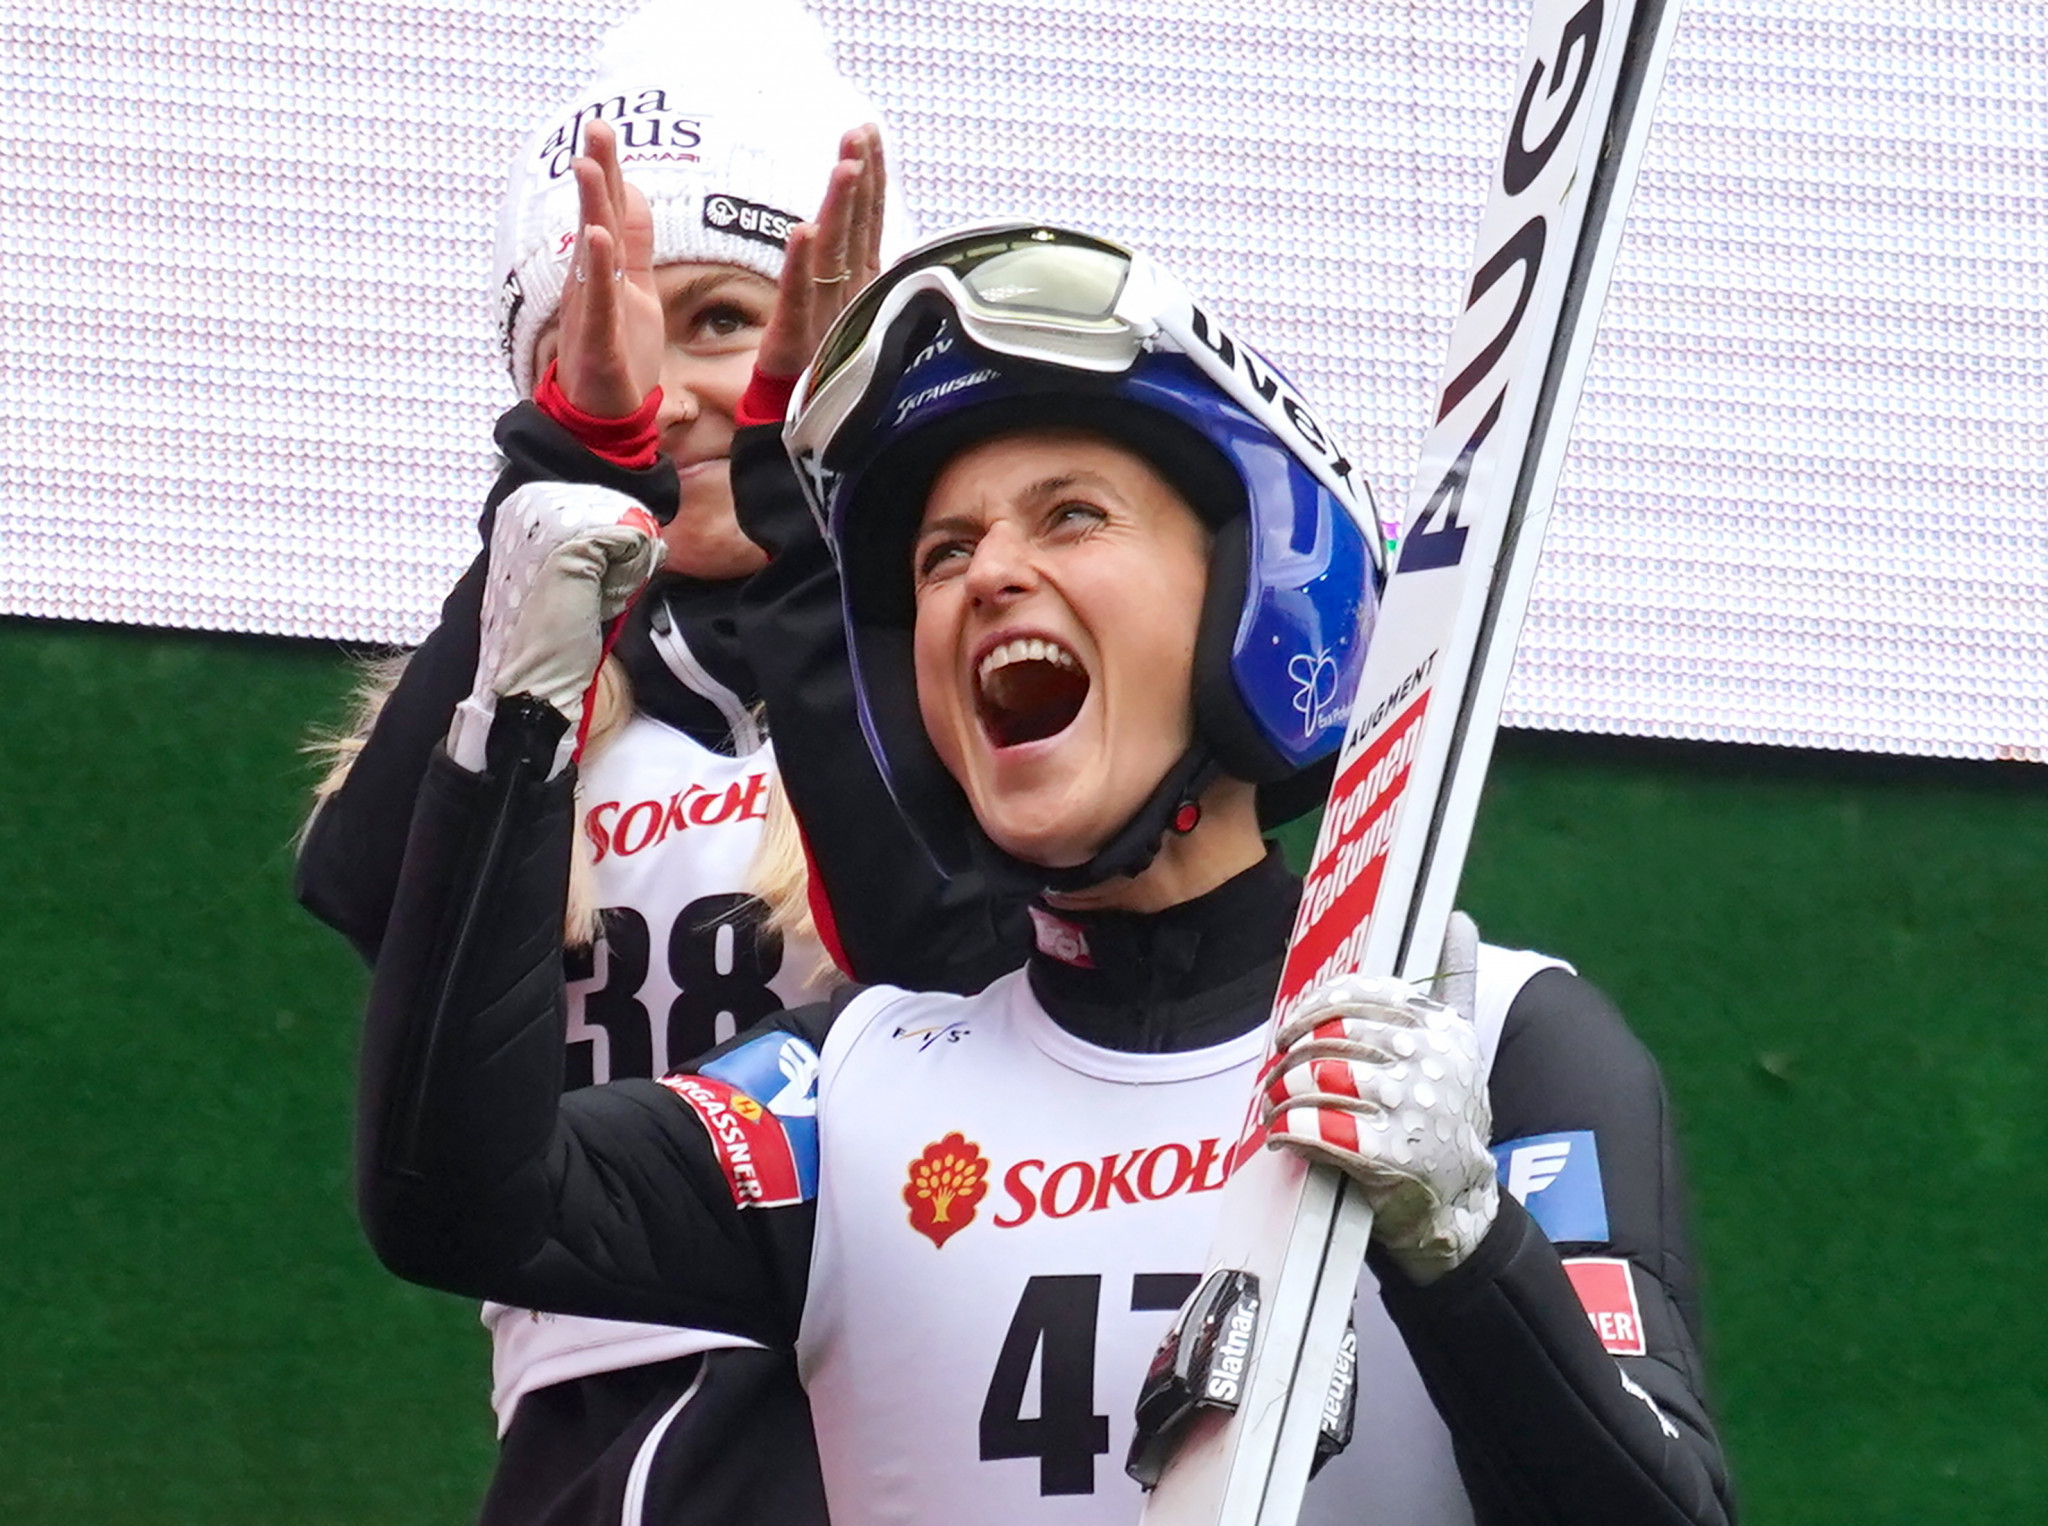 Eva Pinkelnig is the season standings leader ©Getty Images